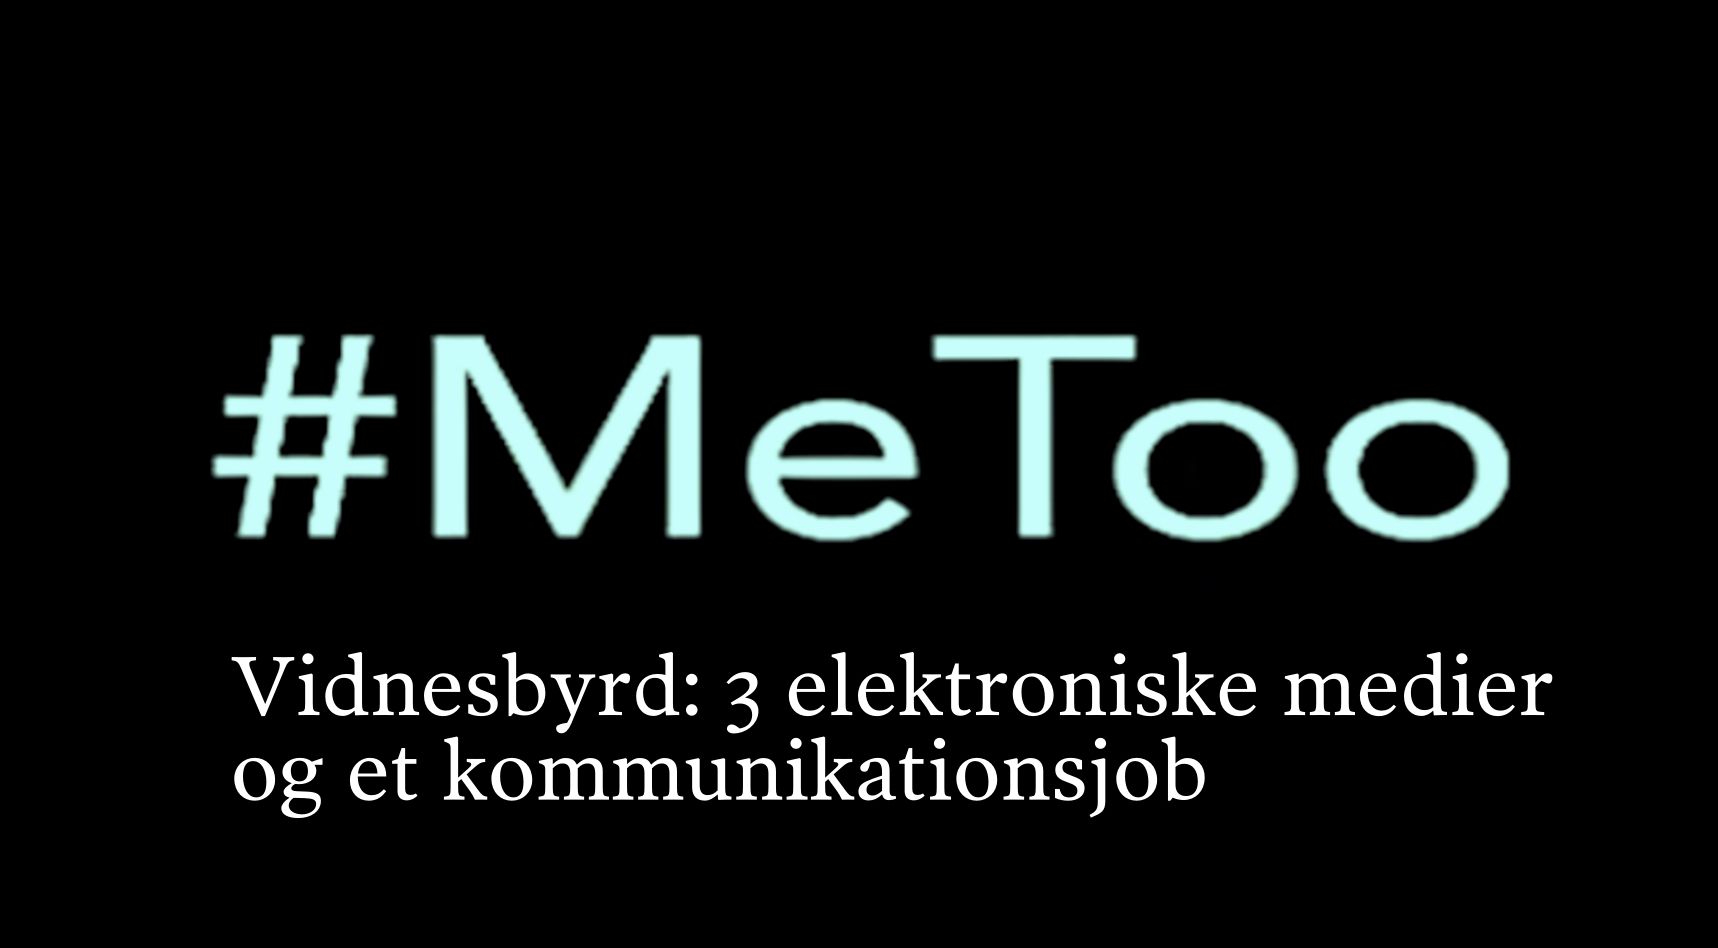 #MeToo vidnesbyrd2 DK